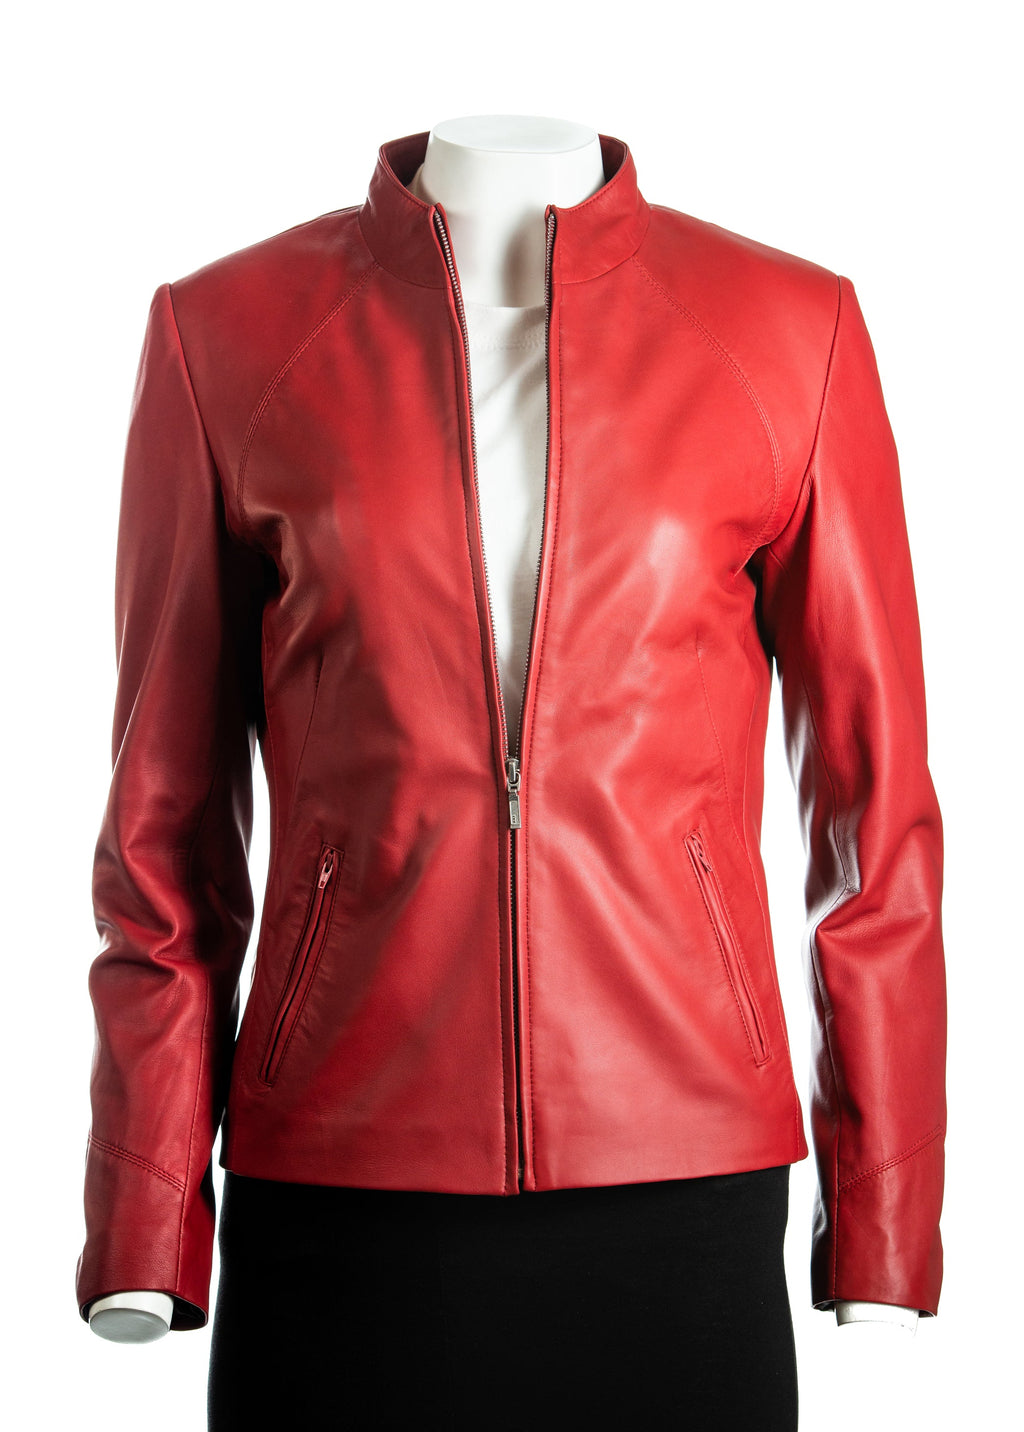 Ladies Tan Plain Short Zipped Leather Jacket: Angelina